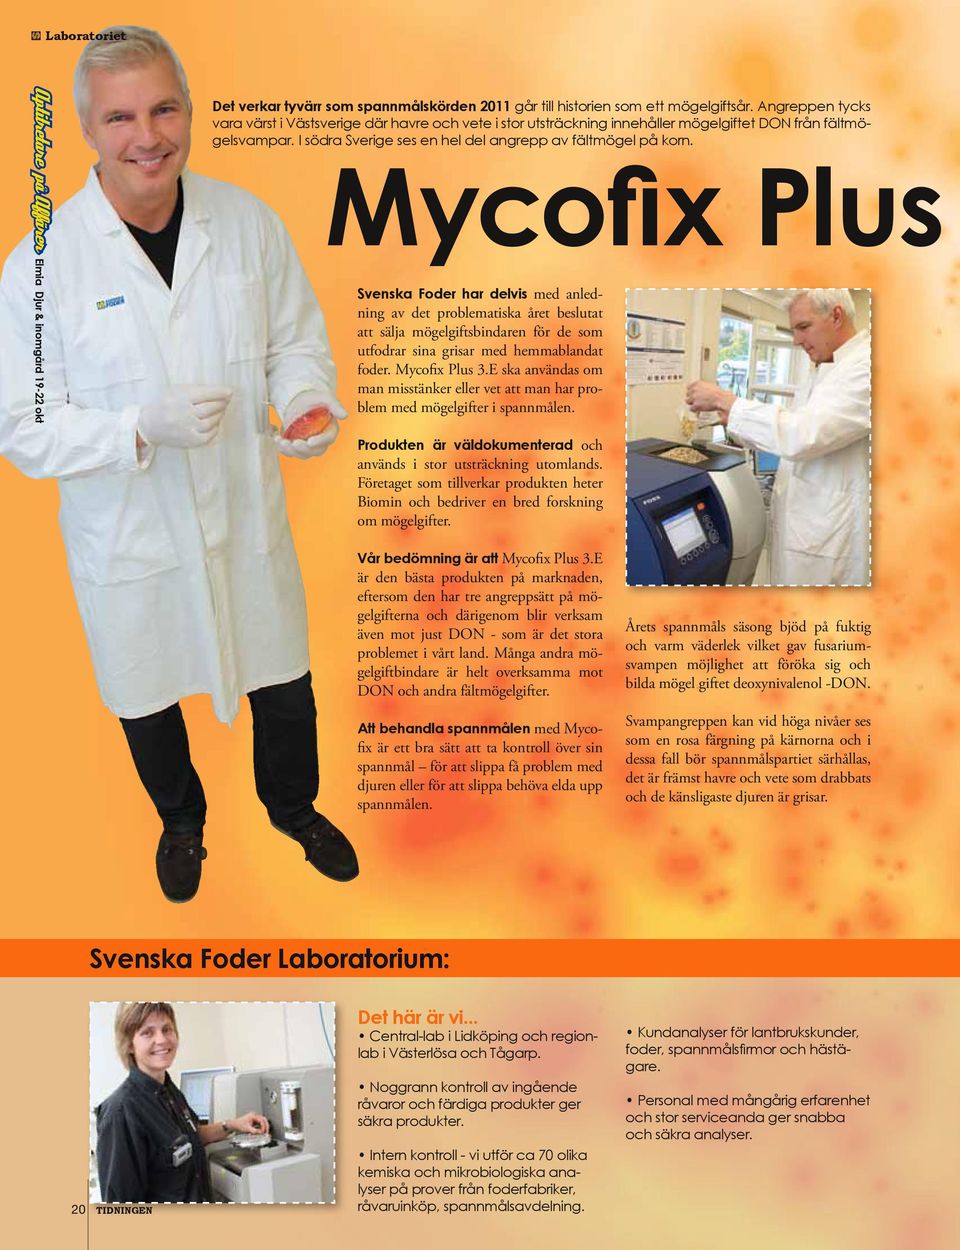 Mycofix Plus Svenska Foder har delvis med anledning av det problematiska året beslutat att sälja mögelgiftsbindaren för de som utfodrar sina grisar med hemmablandat foder. Mycofix Plus 3.